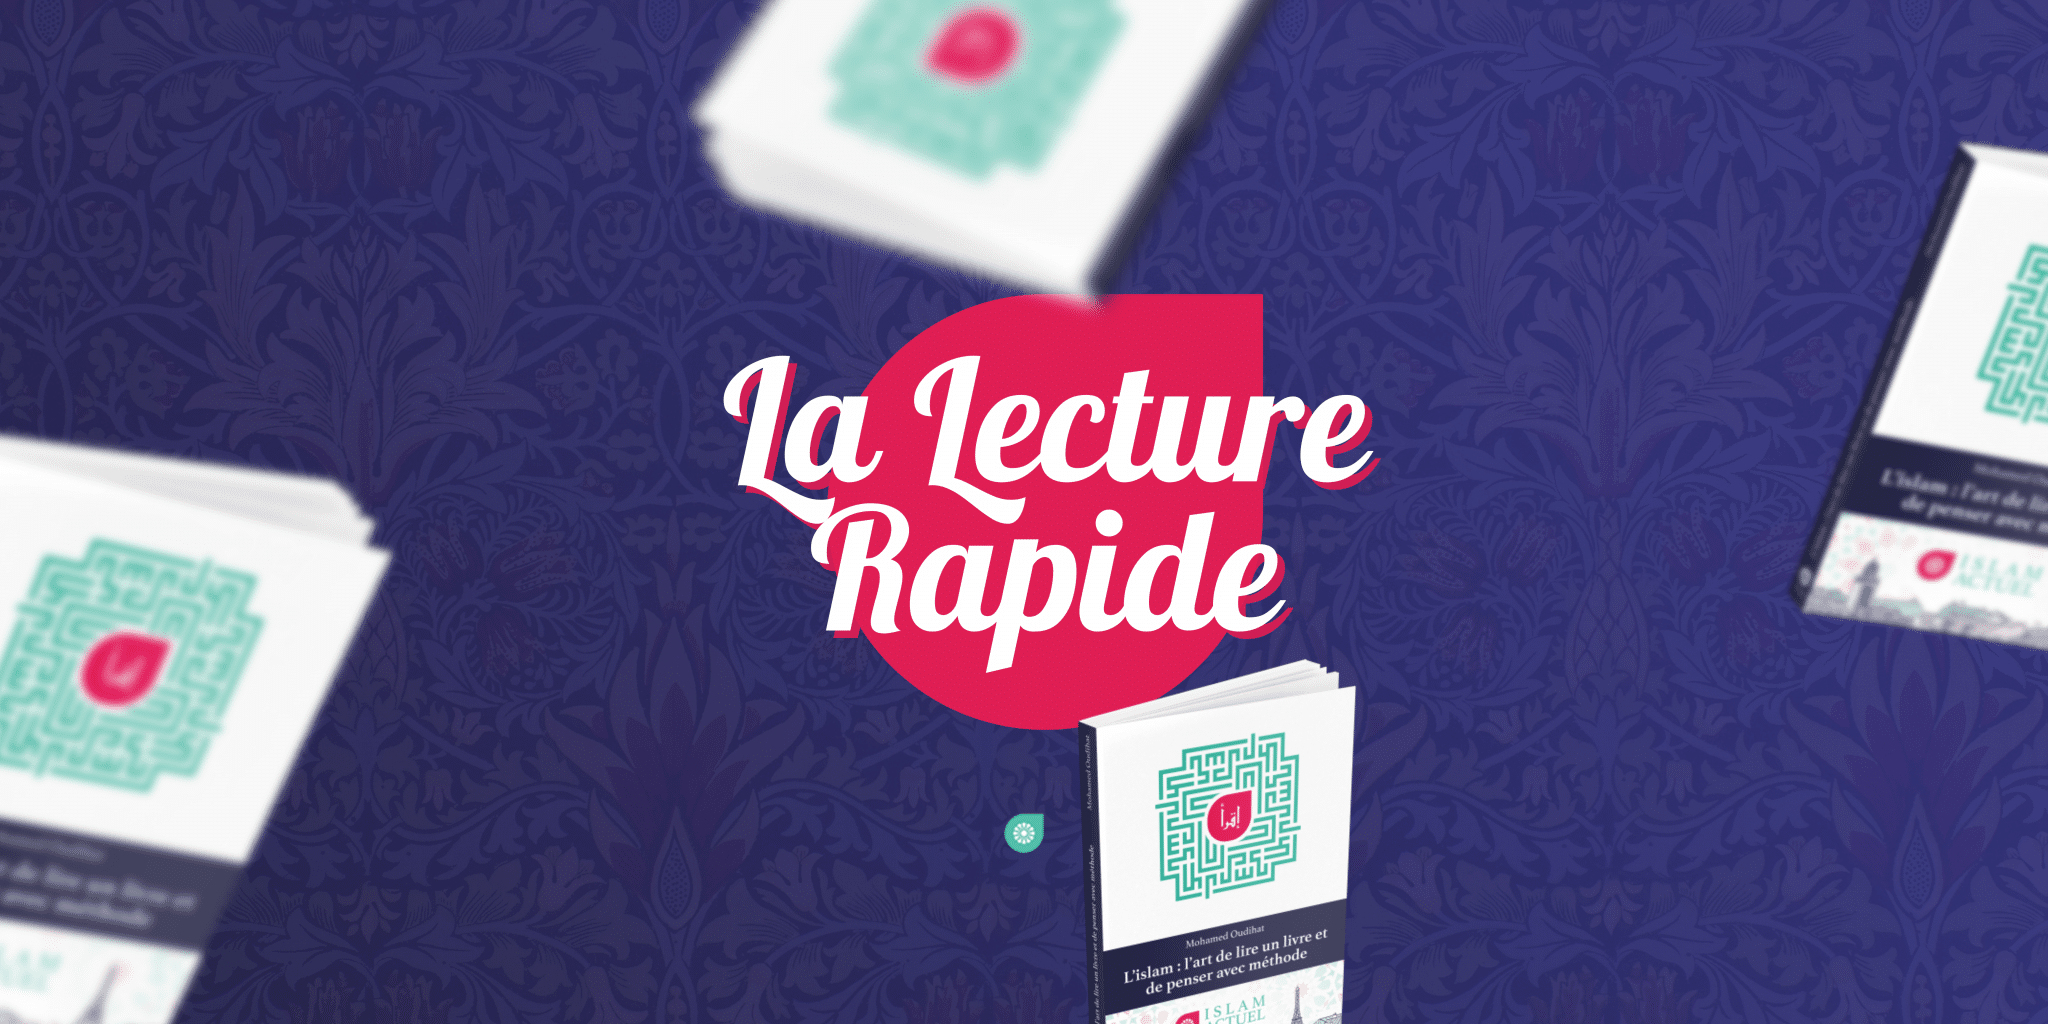 Featured image for “La lecture rapide : idole ou méthode ?”